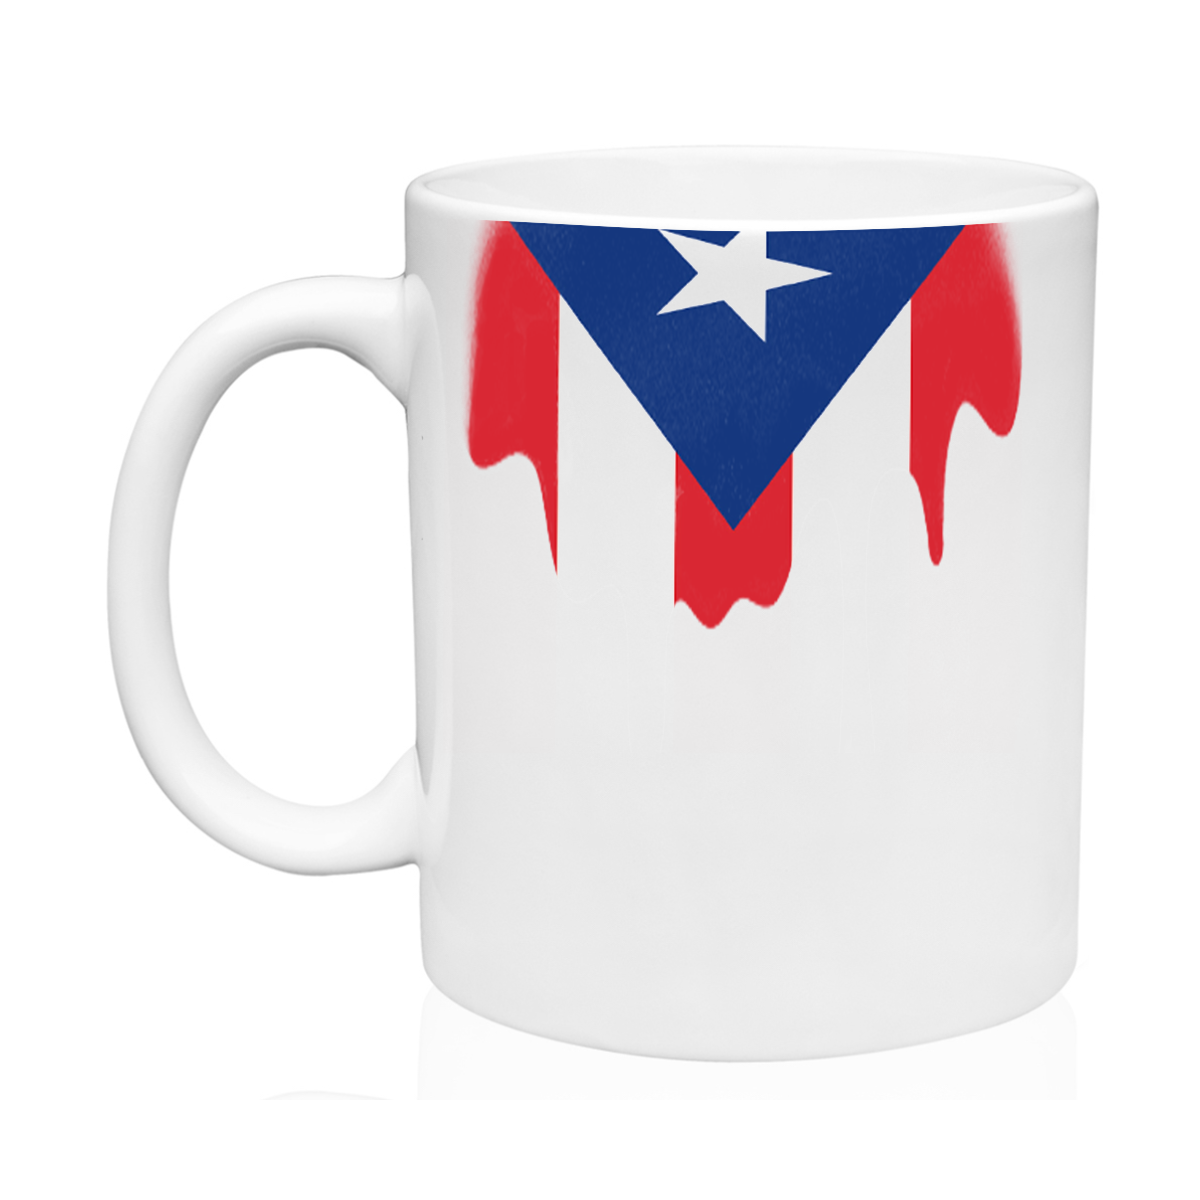 AGAD Puerto Rico (Colores PR Ceramic Mug)